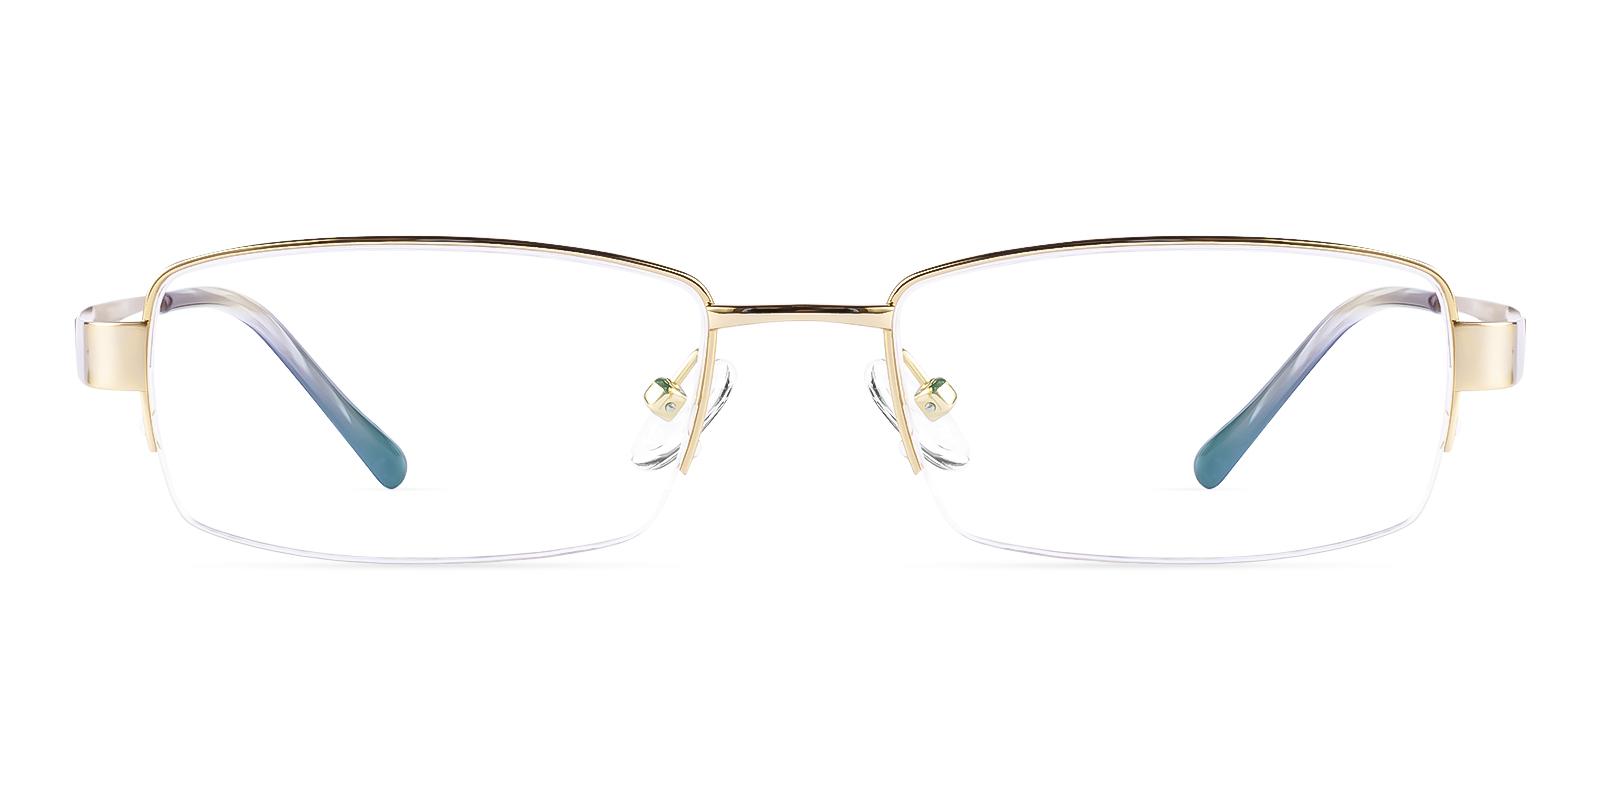 Battar Gold Titanium Eyeglasses , NosePads Frames from ABBE Glasses